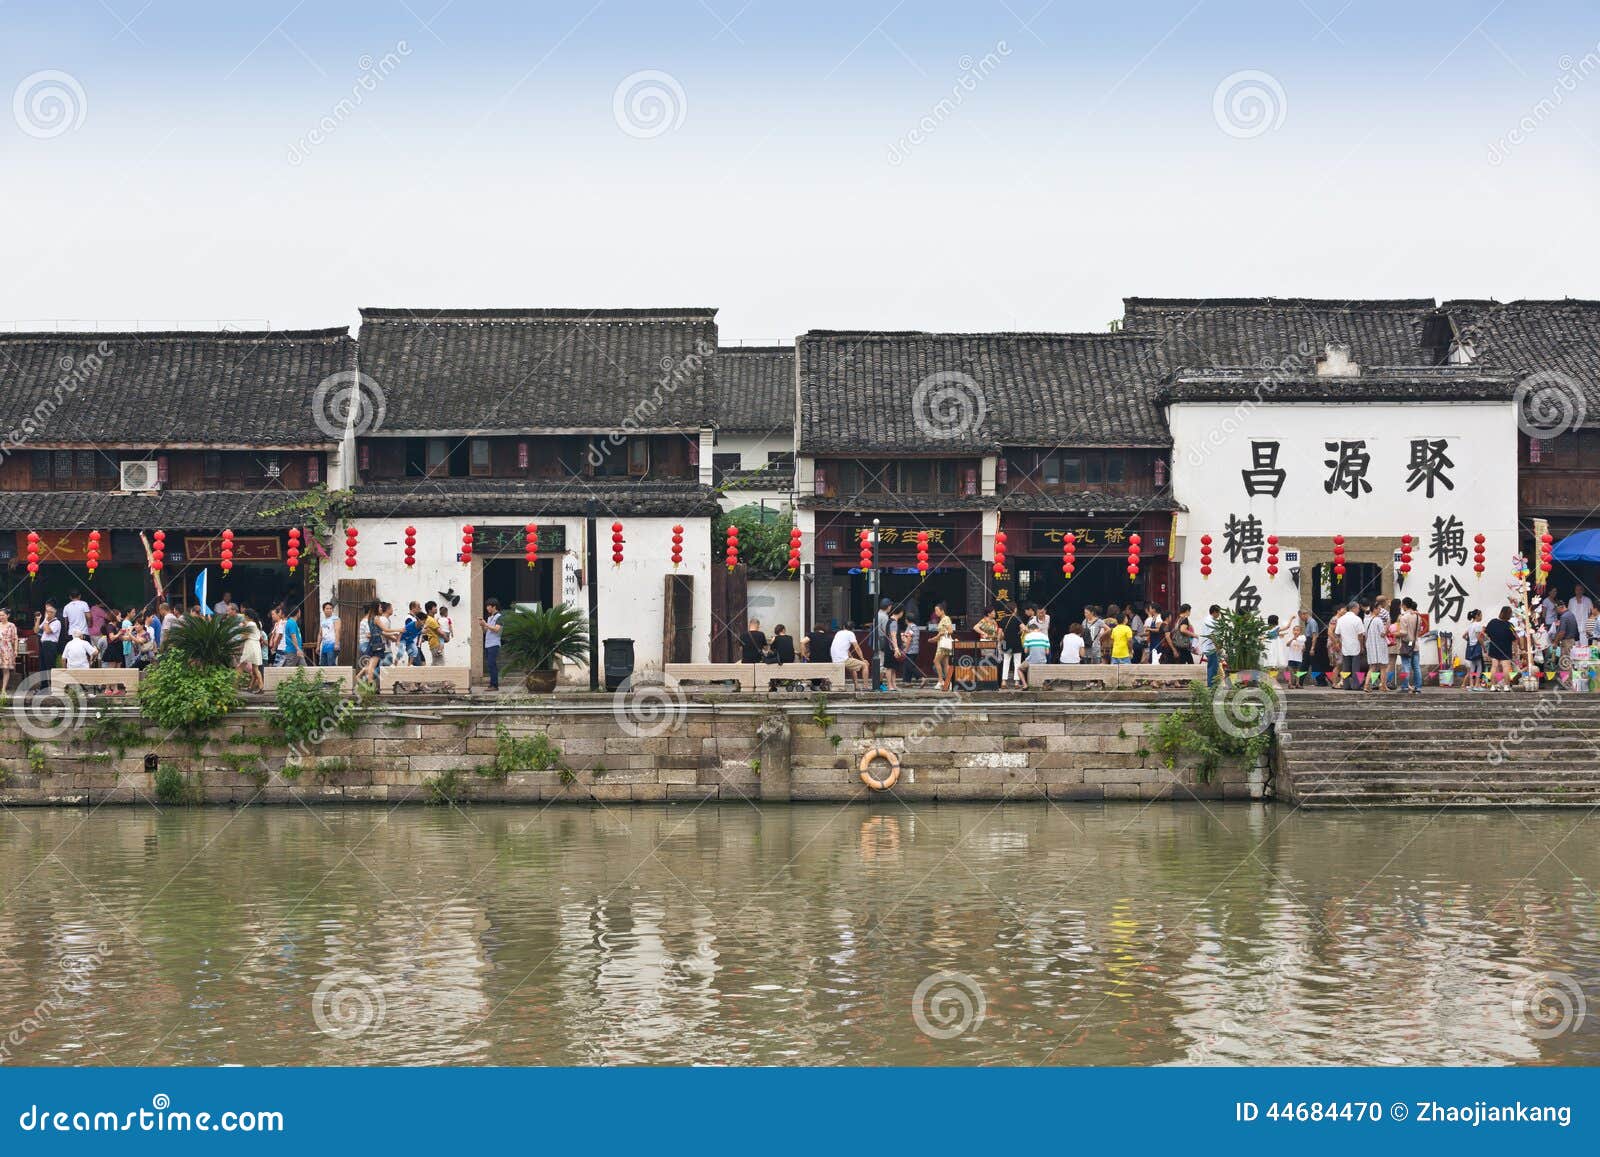 Complexos arquitetónicos antigos do canal grande de Hangzhou. Os complexos arquitetónicos antigos do canal grande do šHangzhou do ¼ do ï do ¼ Œ2014 do ï de Œchina- do ¼ de Hangzhouï o 8 de setembro, Hangzhou são uma cidade famosa do turista